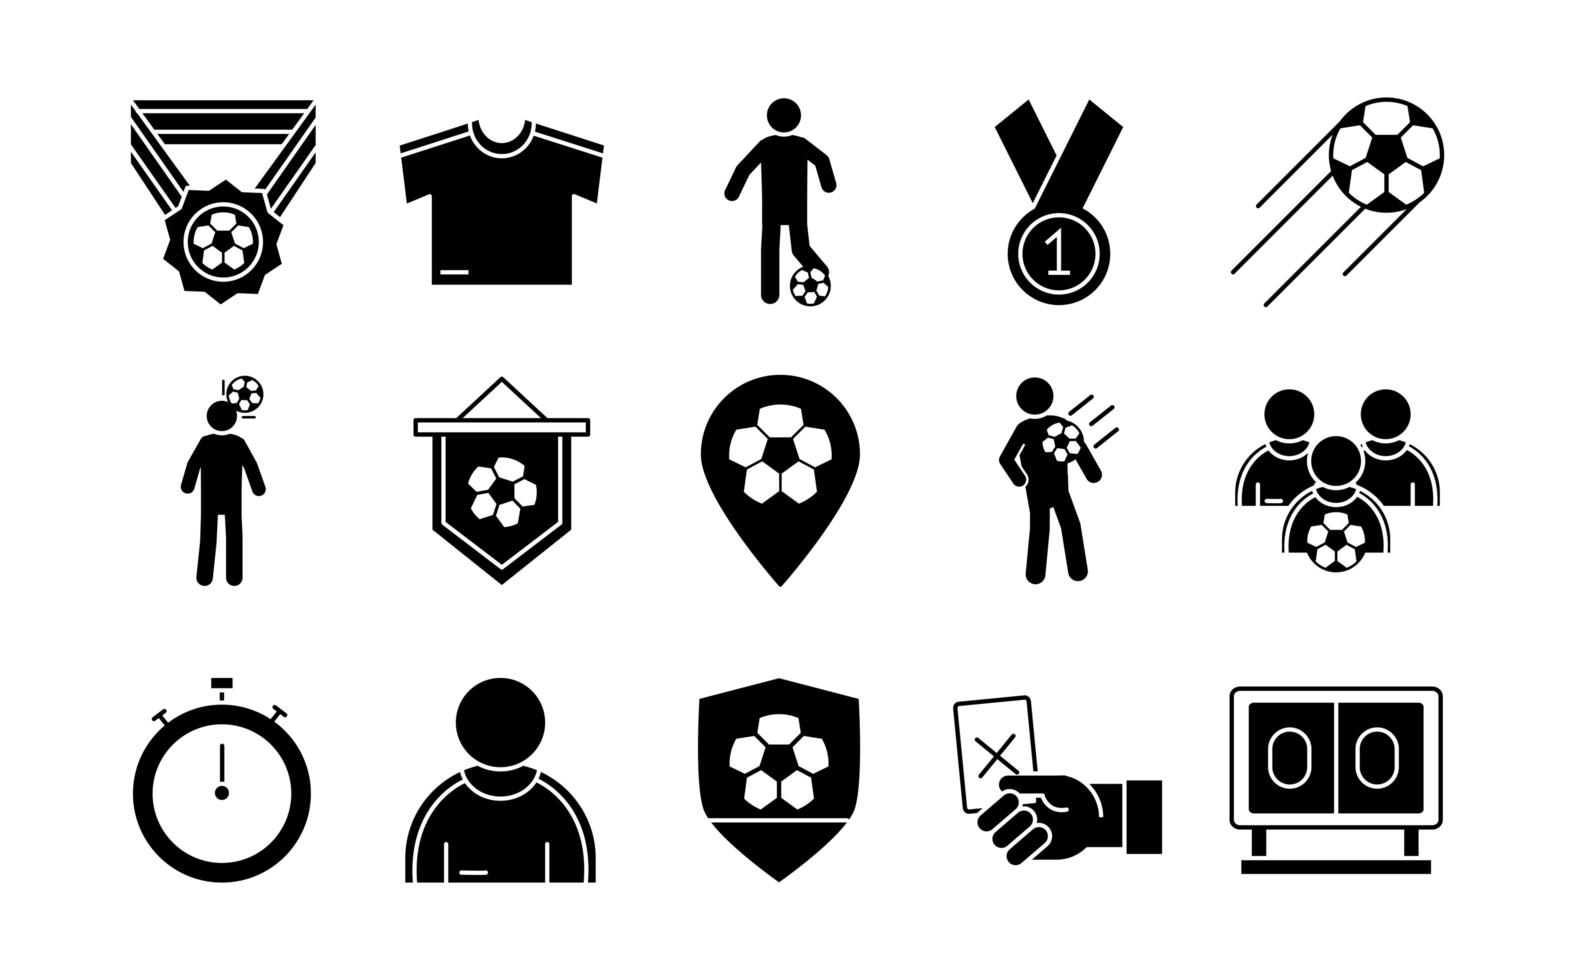 jeu de football trophée ligue tournoi de sports récréatifs jeu d'icônes de style silhouette vecteur